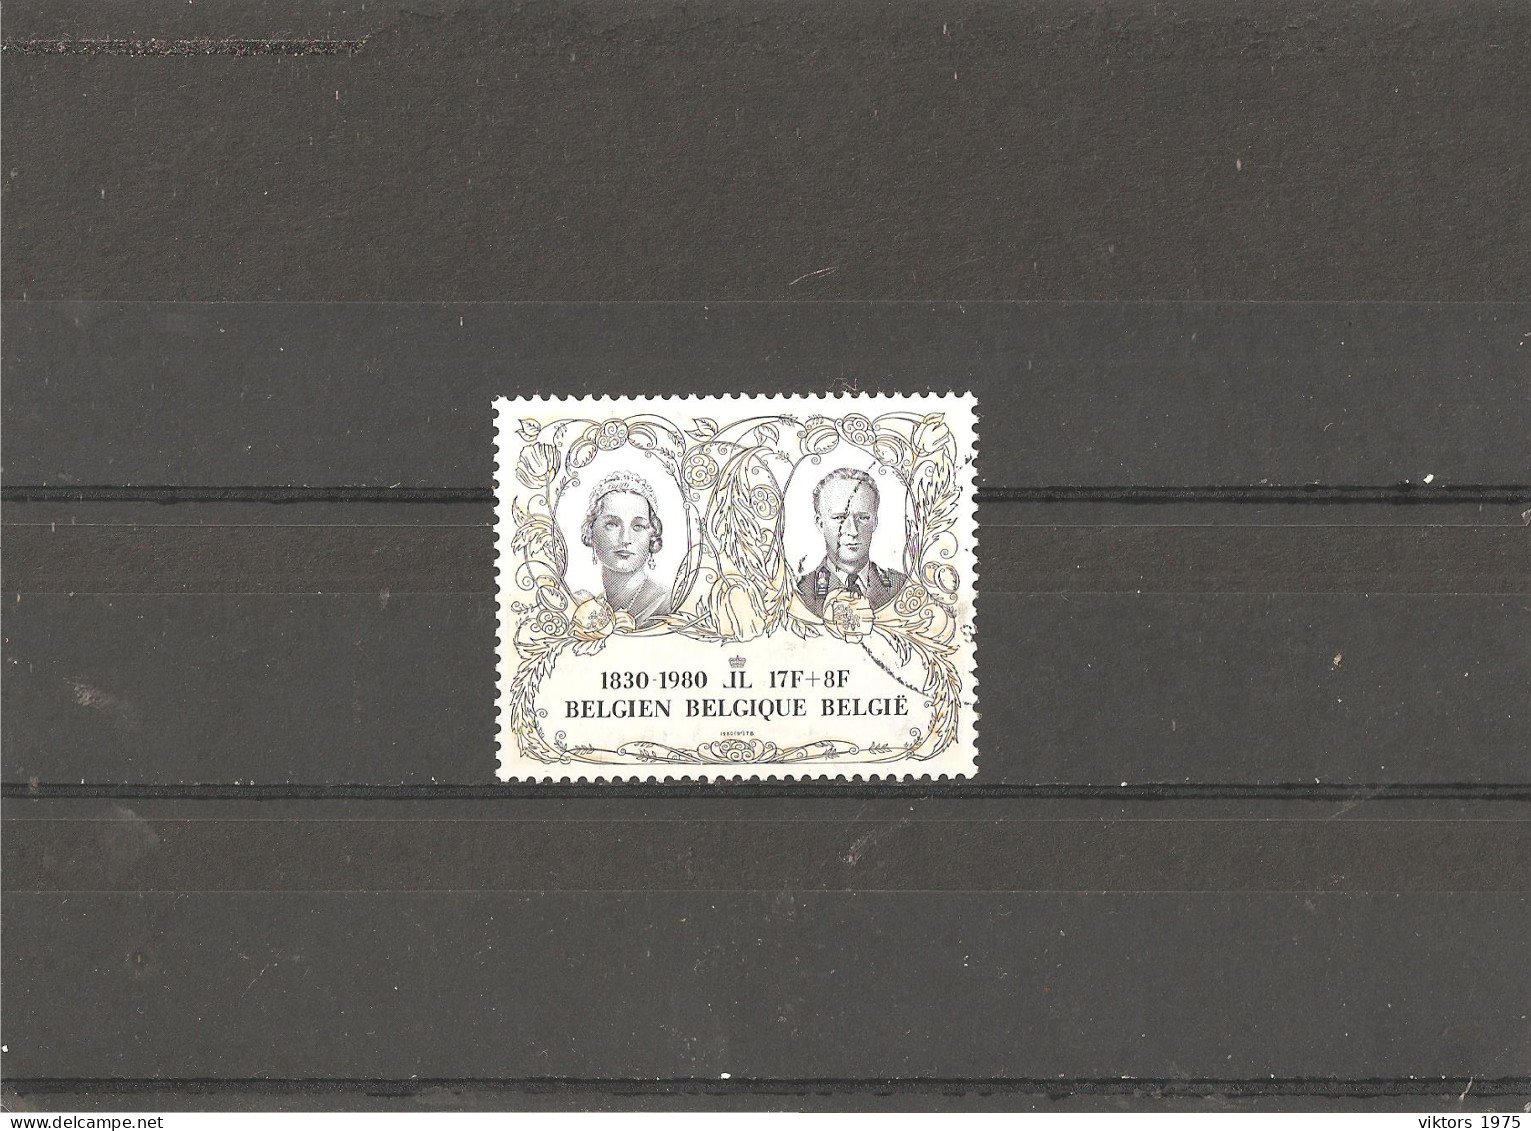 Used Stamp Nr.2032 In MICHEL Catalog - Gebruikt